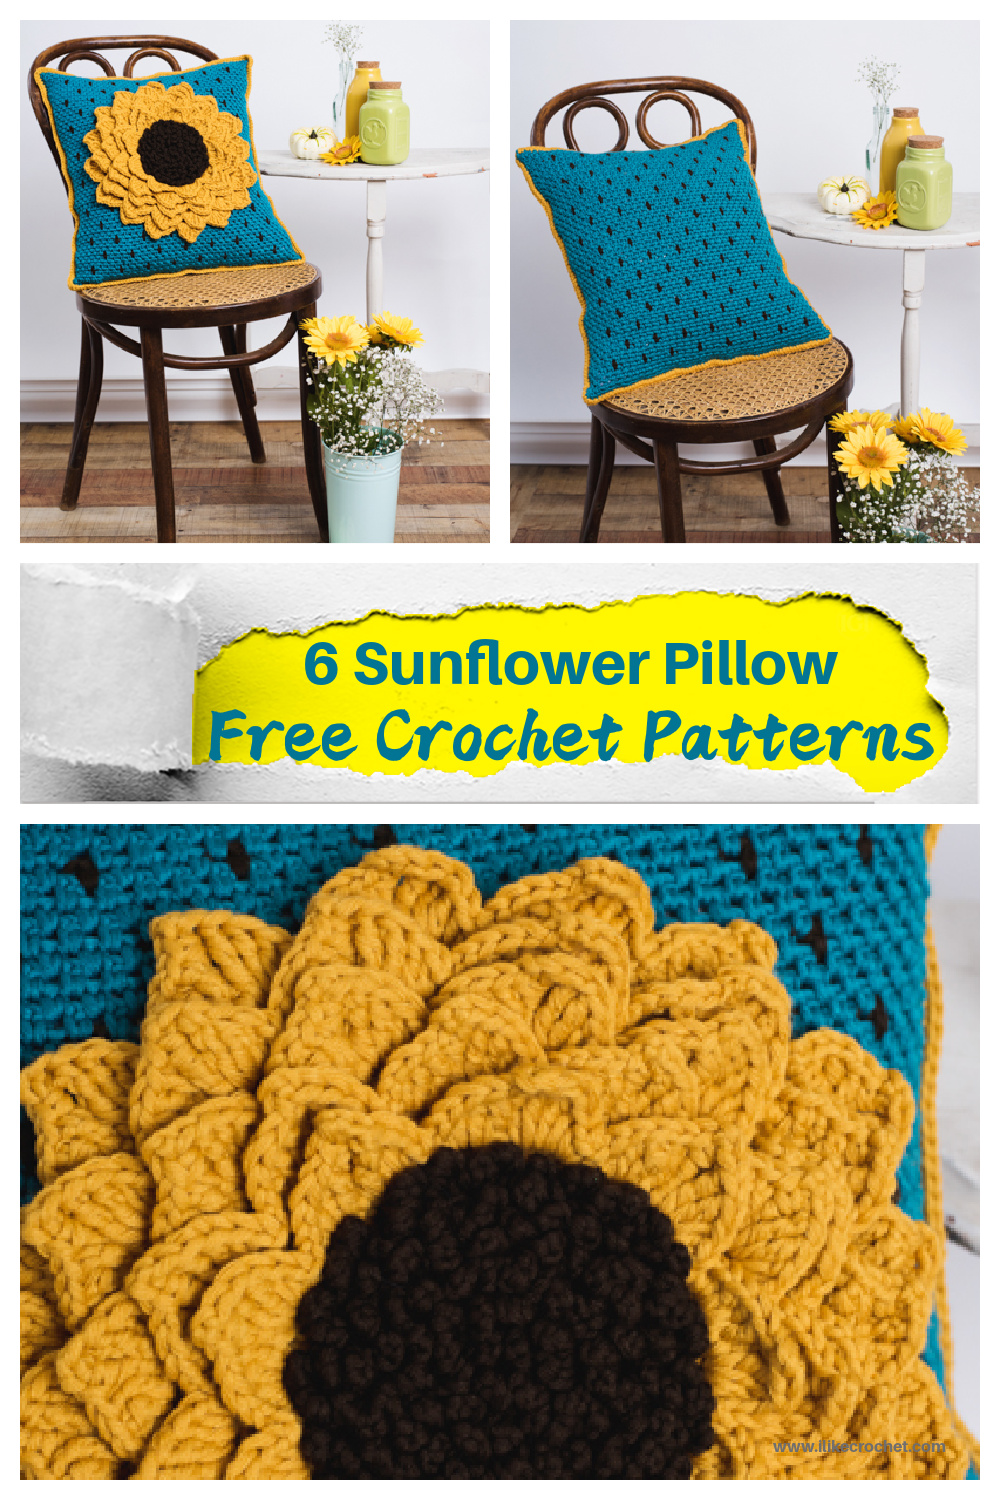 6 Sunflower Pillow Free Crochet Patterns